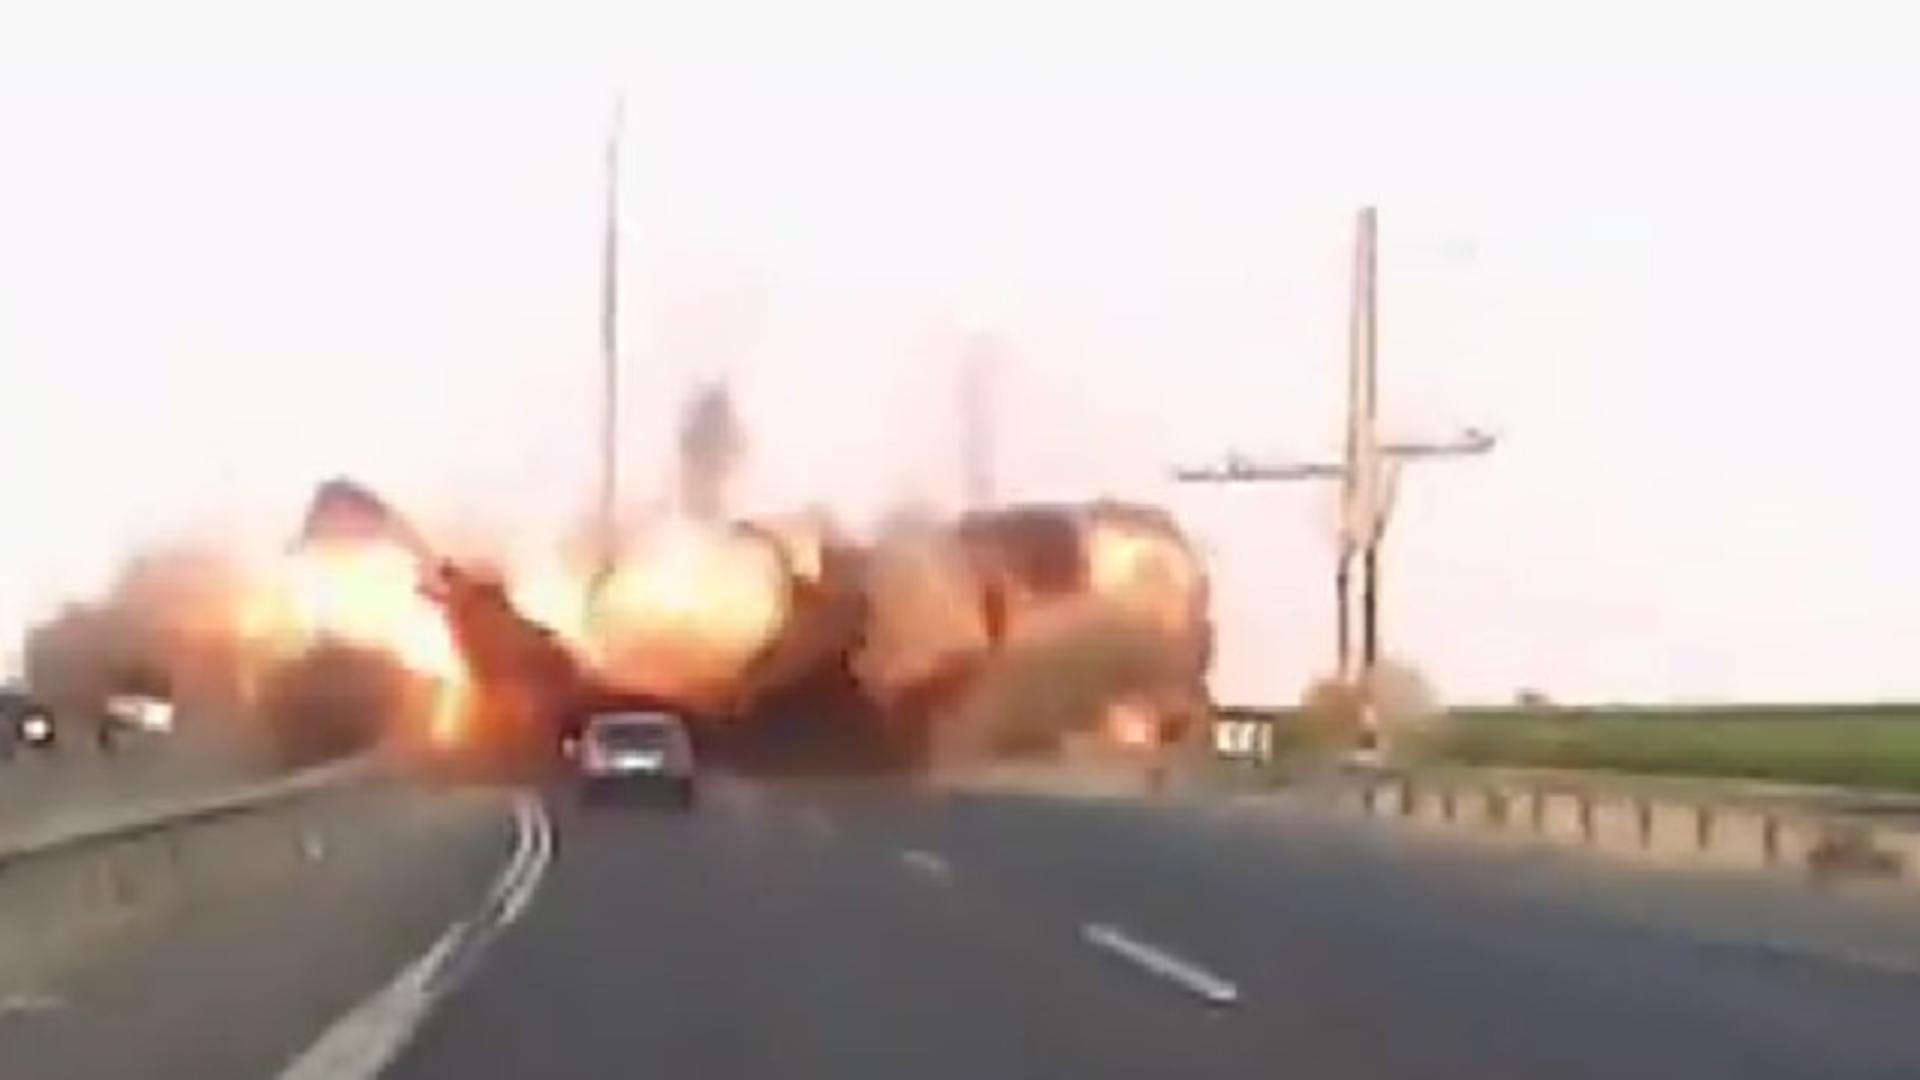 Rachetă căzută în mijlocul autostrăzii. Foto/Captură video